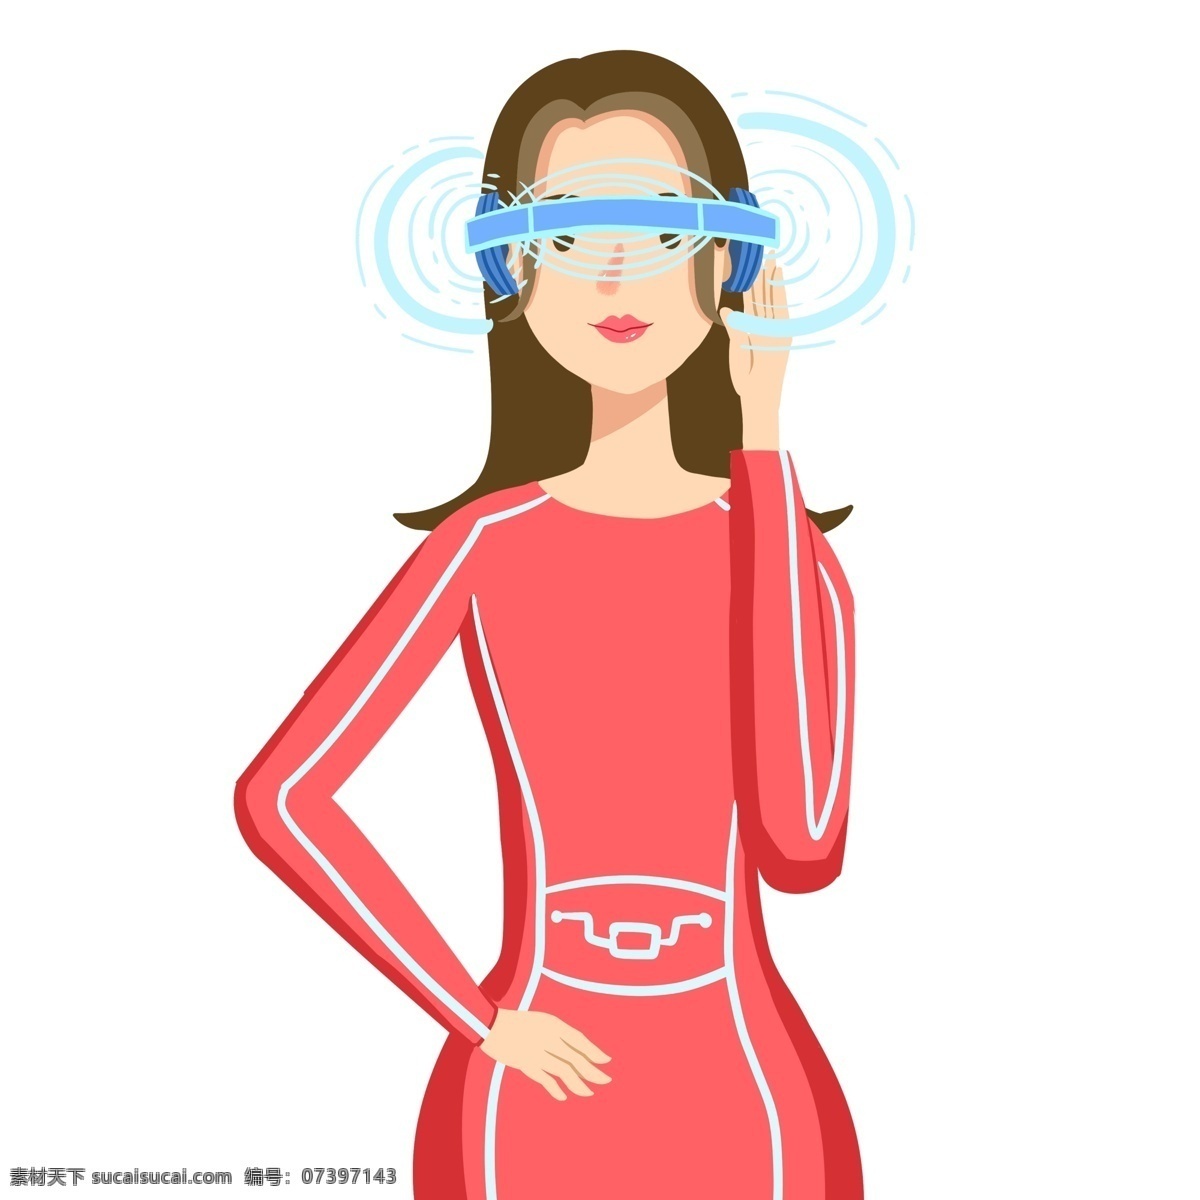 创意 带 vr 眼镜 时尚 女性 卡通 人物 女孩 智能科技